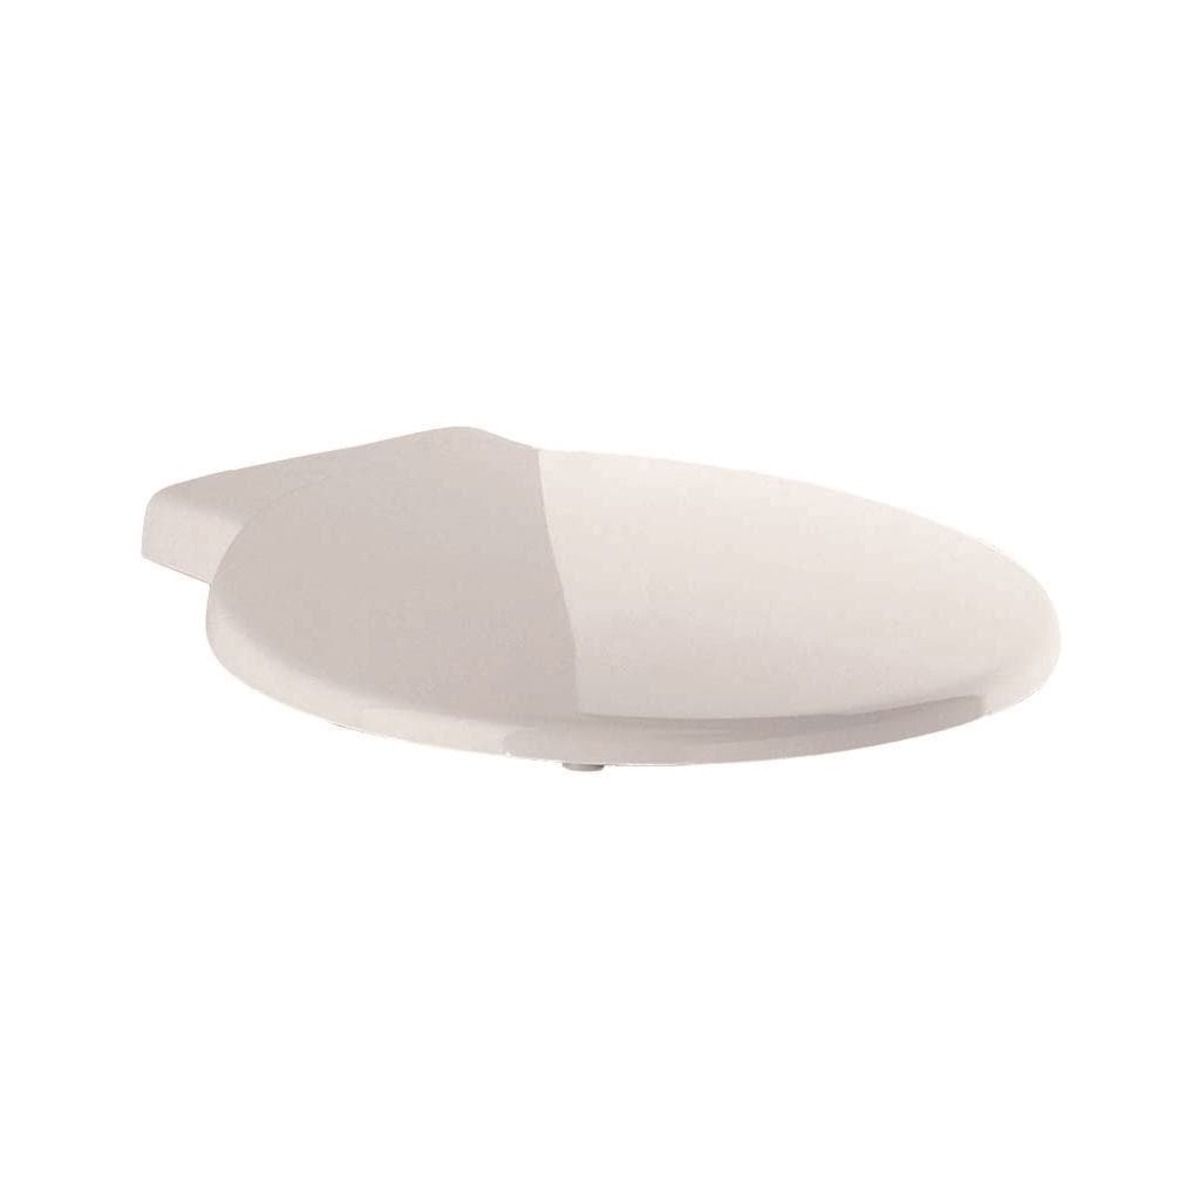 Wc prkénko Ideal Standard Venice duroplast bílá K703301 - Siko - koupelny - kuchyně